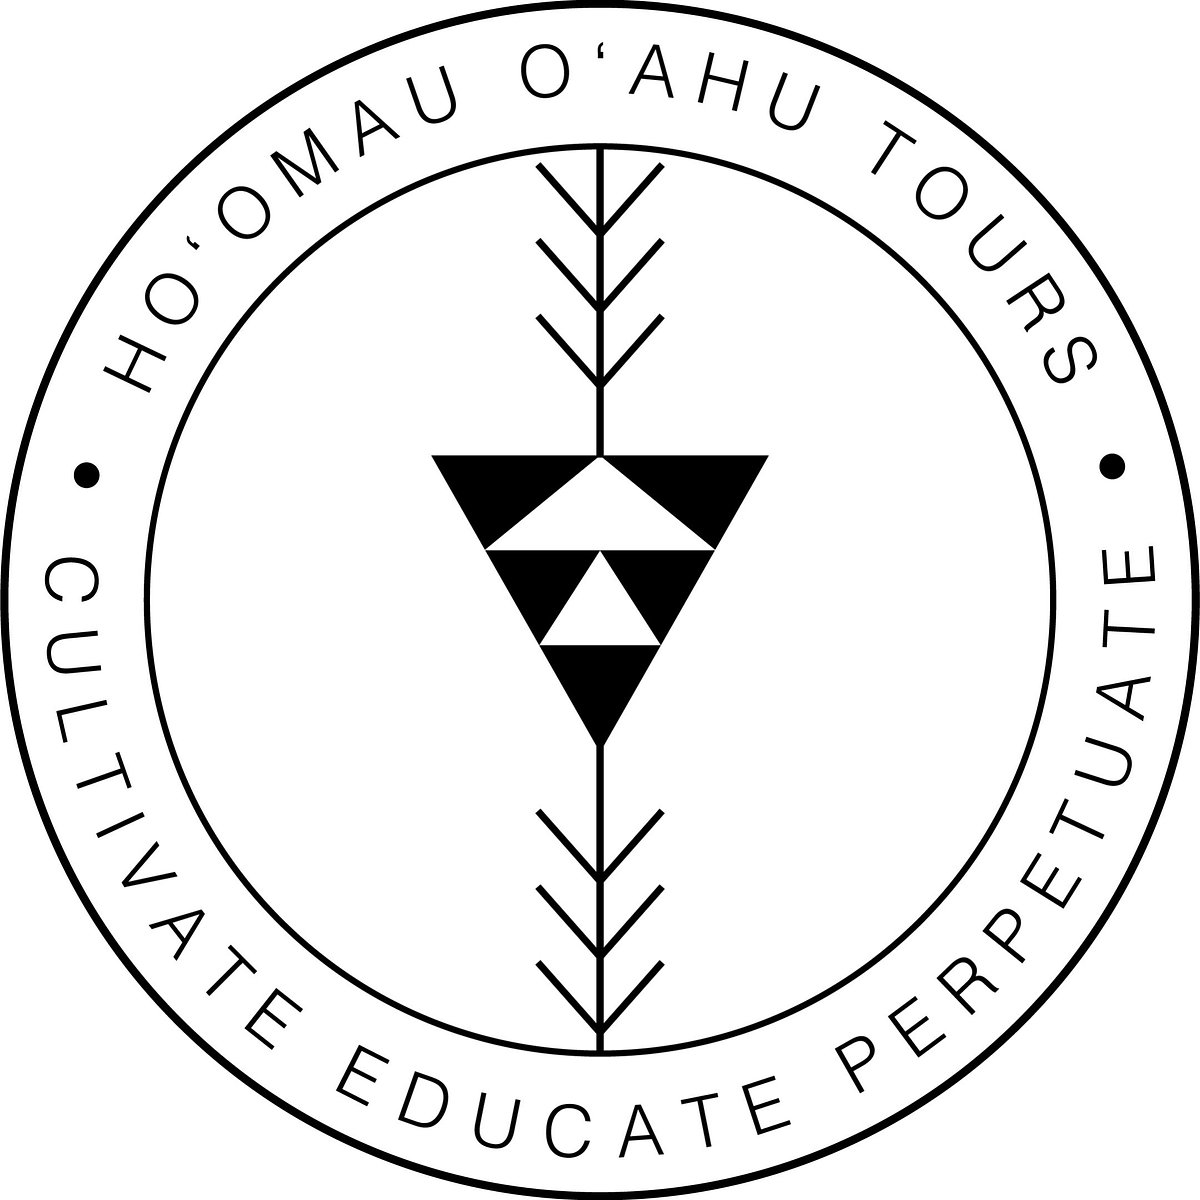 Hoomau Oahu Tours Honolulu All You Need To Know Before You Go 9495